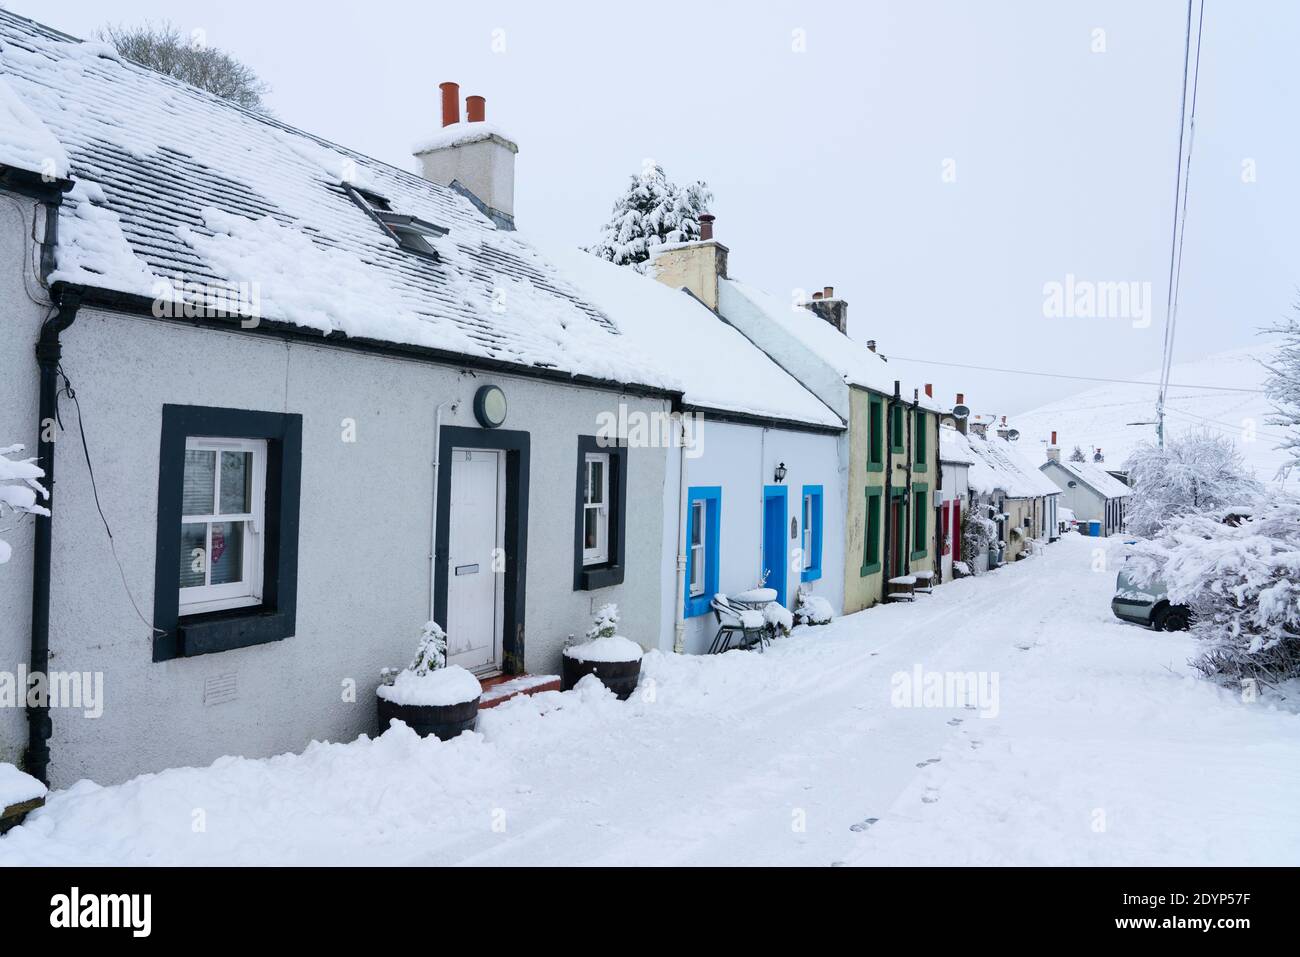 LeadHills, Scozia, Regno Unito. 27 dicembre 2020. La neve alta cade sul secondo villaggio più alto della Scozia, Leadhills, nel Lanarkshire meridionale. Iain Masterton/Alamy Live News Foto Stock